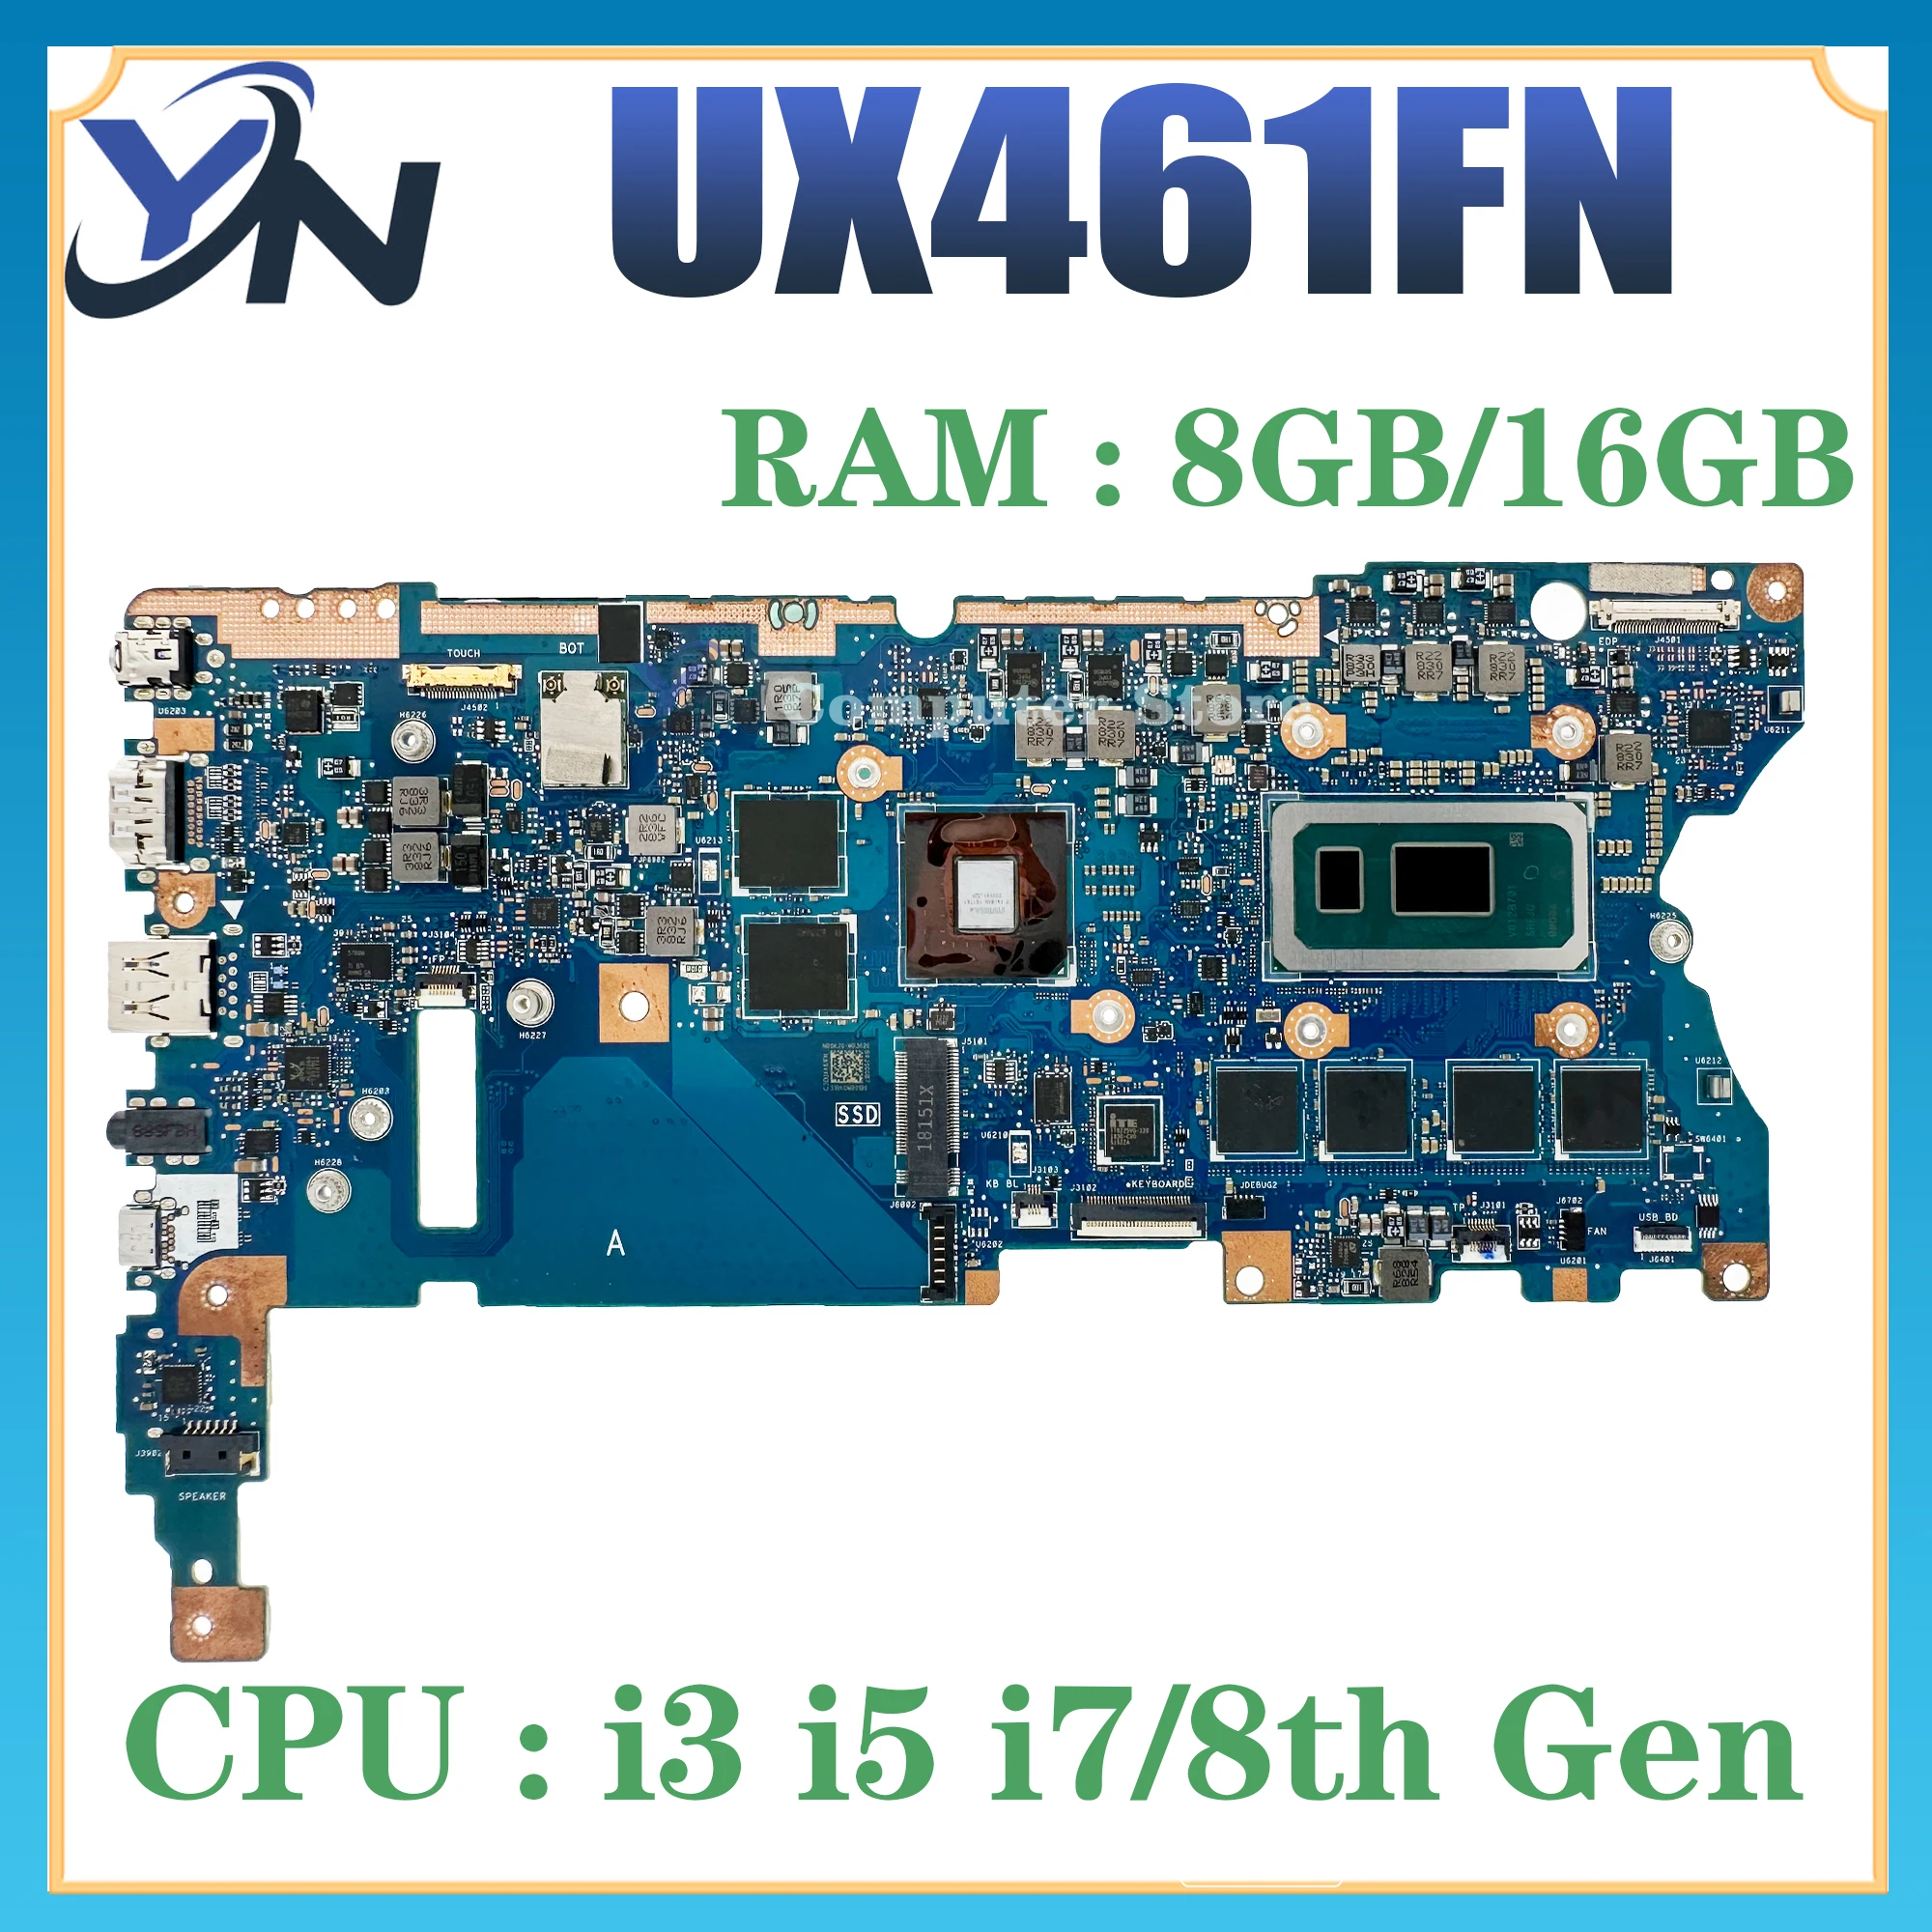 

UX461U Mainboard For ASUS UX461UN UX461UA UX461FN UX461FA TP461UN TP461UA Laptop Motherboard W/I3 I5 I7 8th Gen 4GB/8GB/16GB-RAM